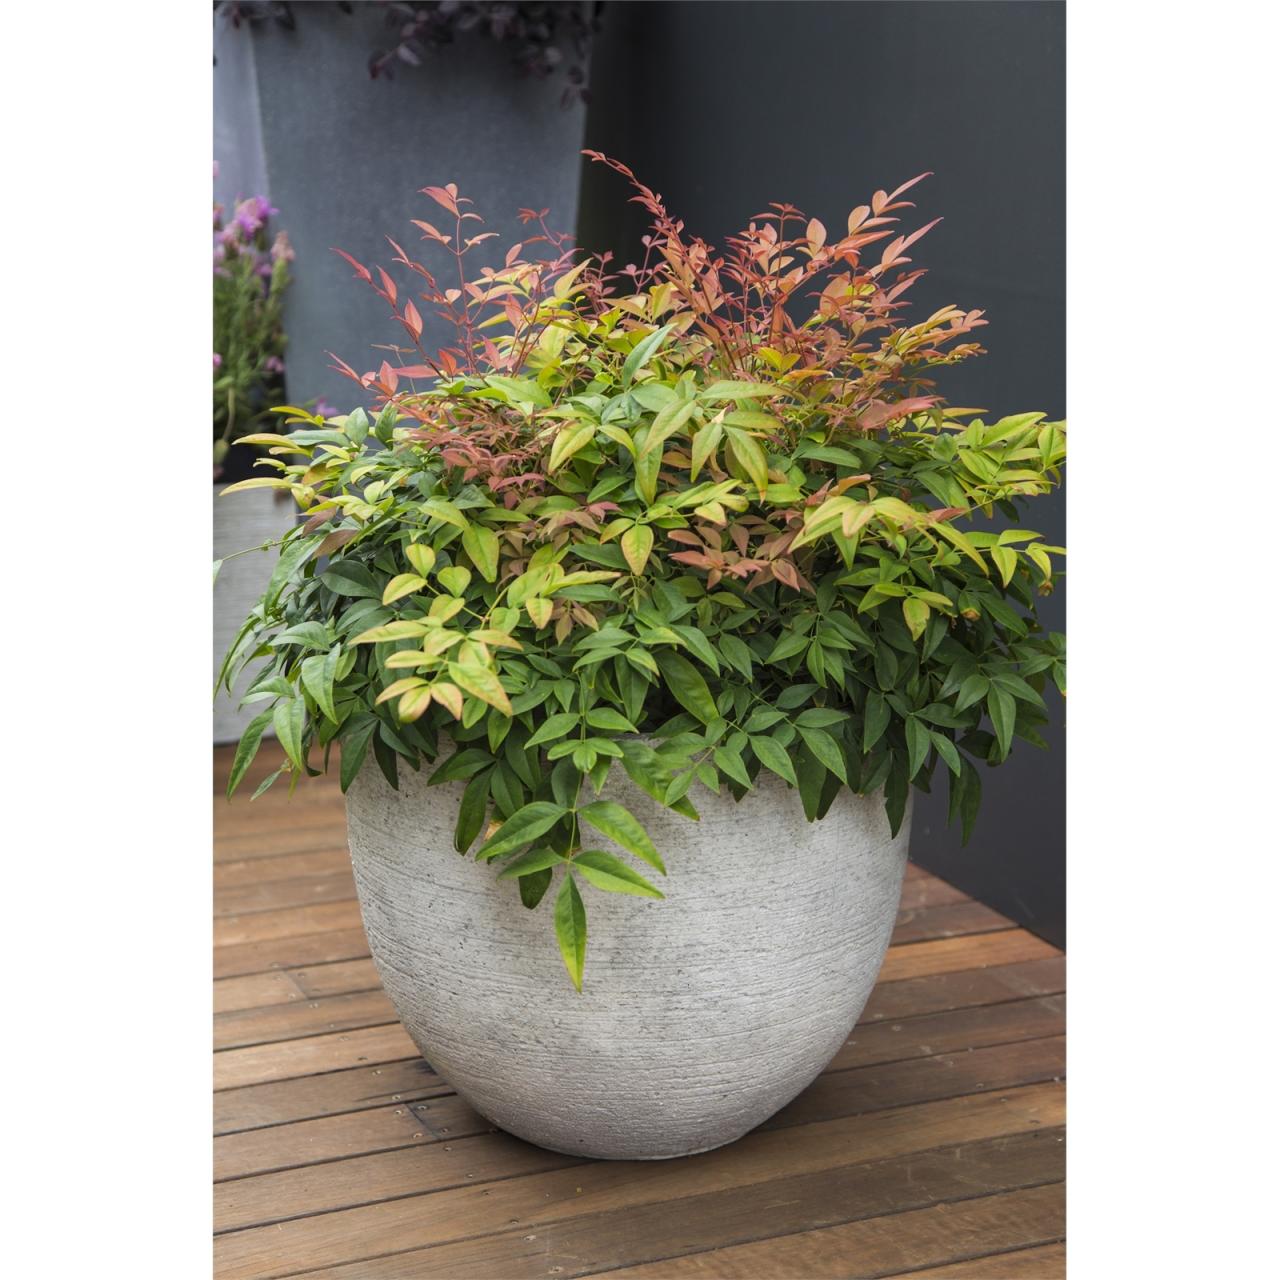 Hanging Plants Indoor | Bunnings 200mm Pot: Versatile and Durable Gardening Essential